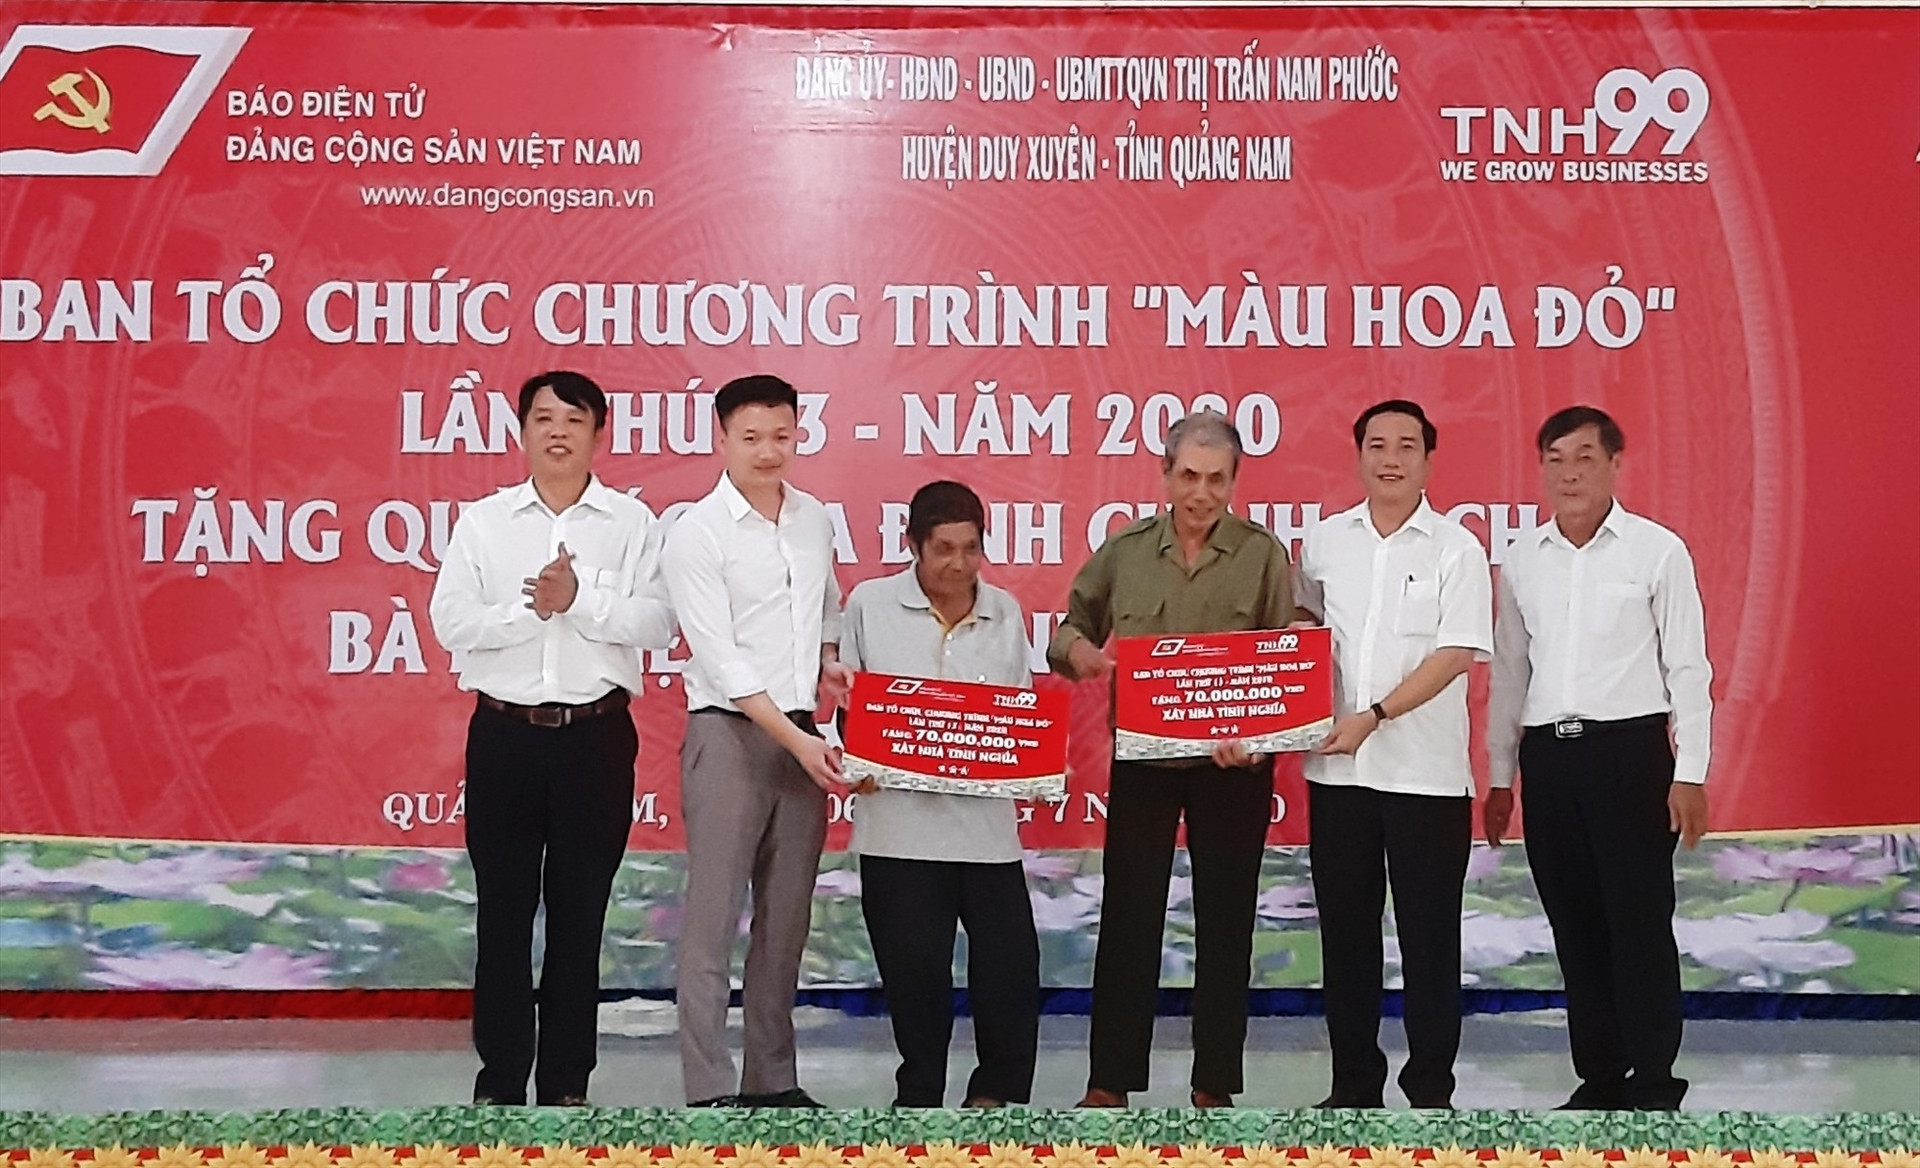 Đại diện lãnh đạo Báo điện tử Đảng Cộng sản Việt Nam và chính quyền địa phương trao tặng nhà tình nghĩa cho 2 gia đình chính sách.